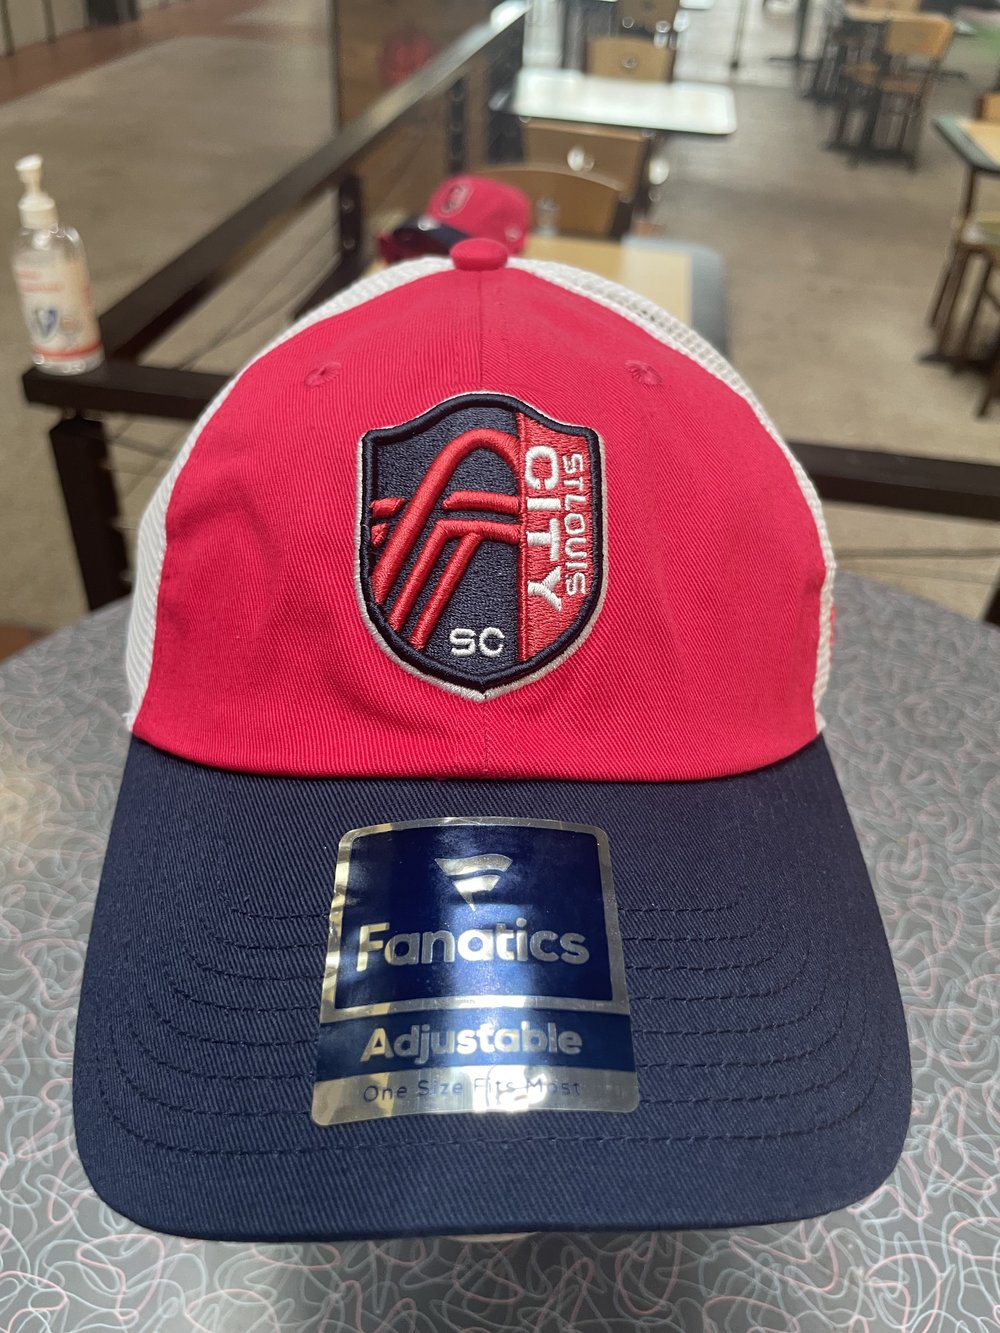 St. Louis City SC Hats, St Louis SC Caps, Snapbacks, Beanies